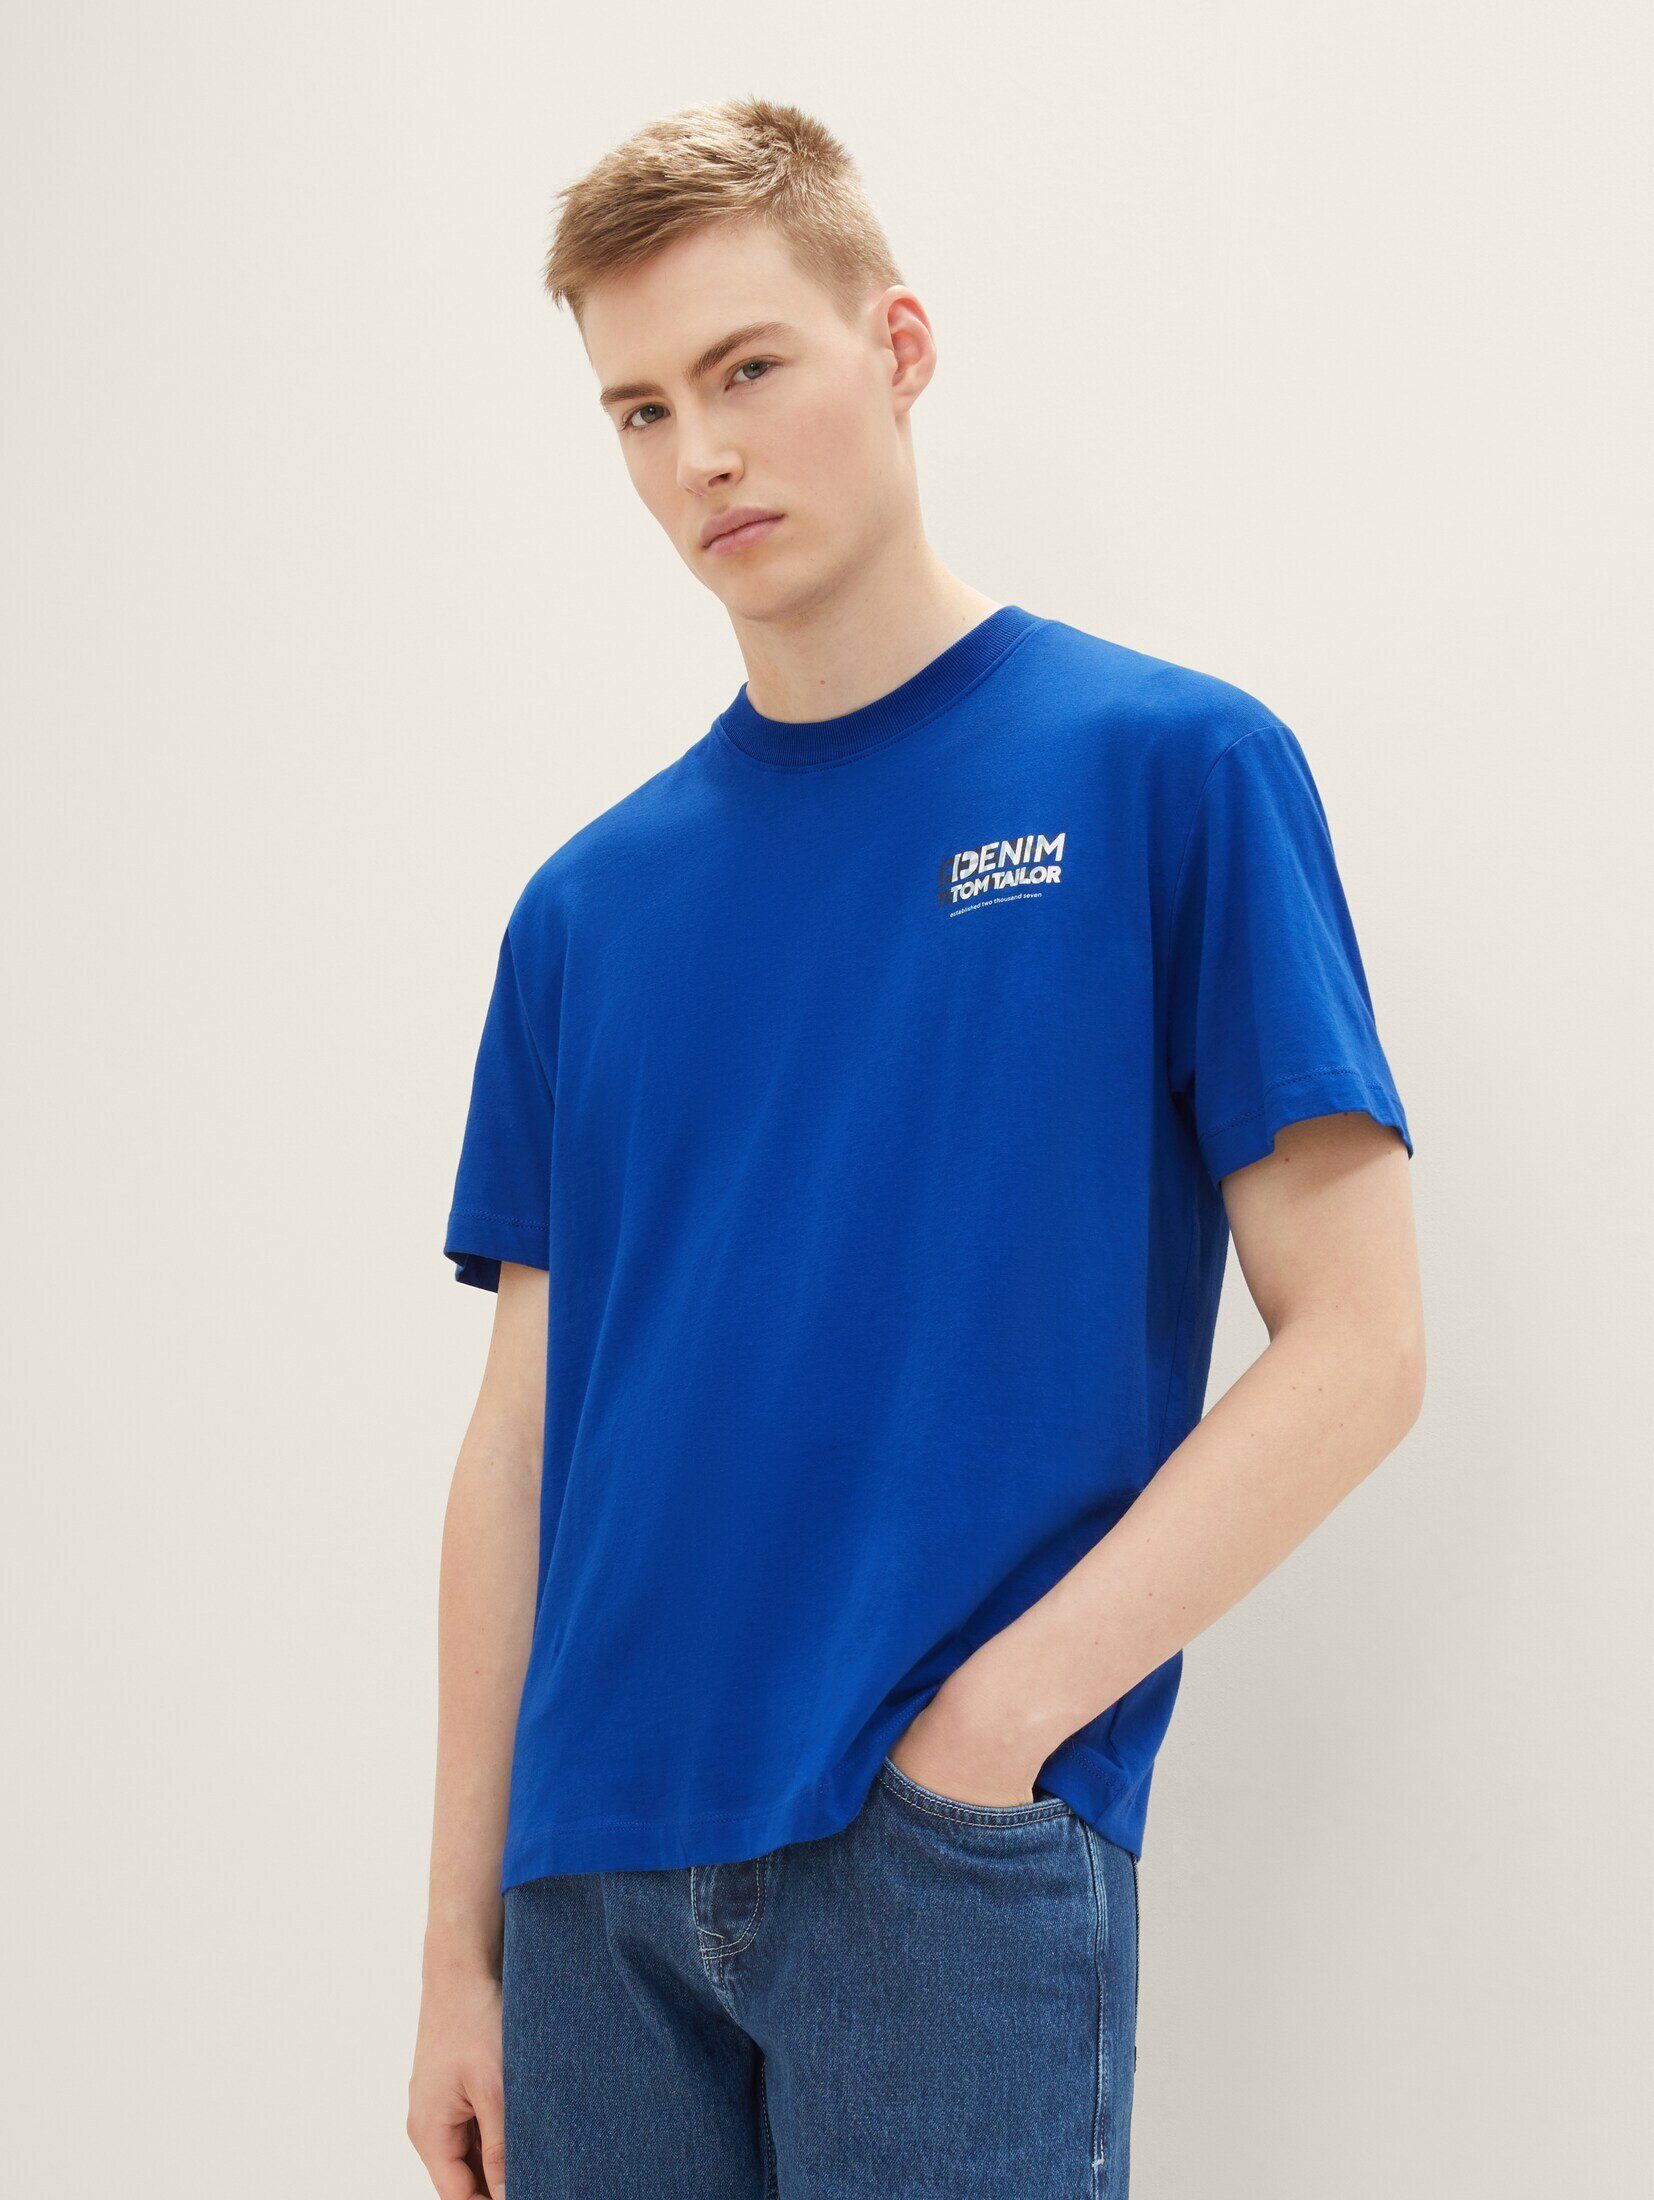 TOM TAILOR Denim T-Shirt T-Shirt mit Bio-Baumwolle shiny royal blue